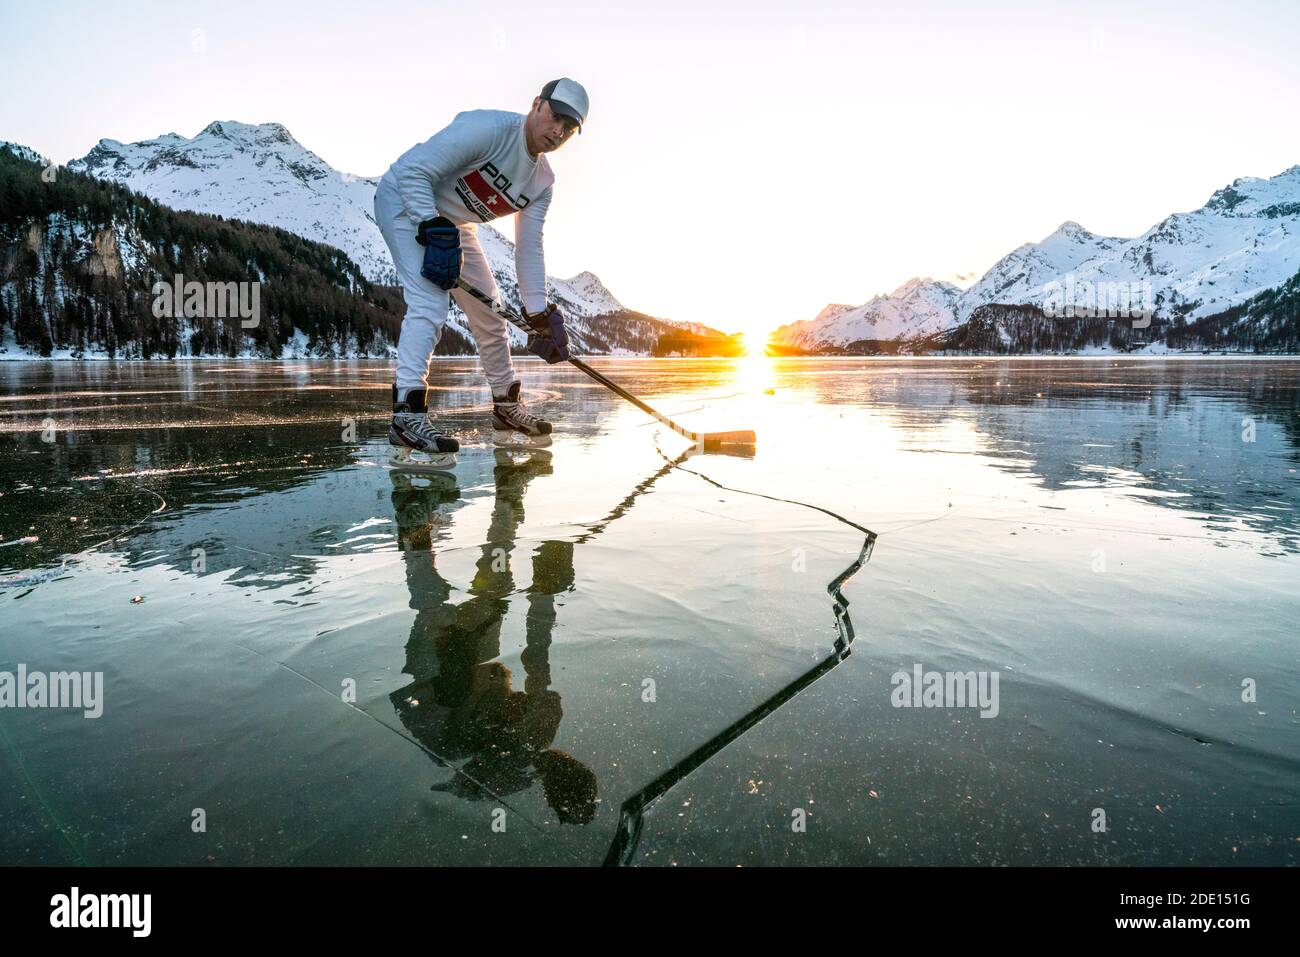 Vista frontale del giocatore di hockey su ghiaccio sulla superficie incrinata del lago ghiacciato Sils, Engadina, Cantone Graubunden, Svizzera, Europa Foto Stock